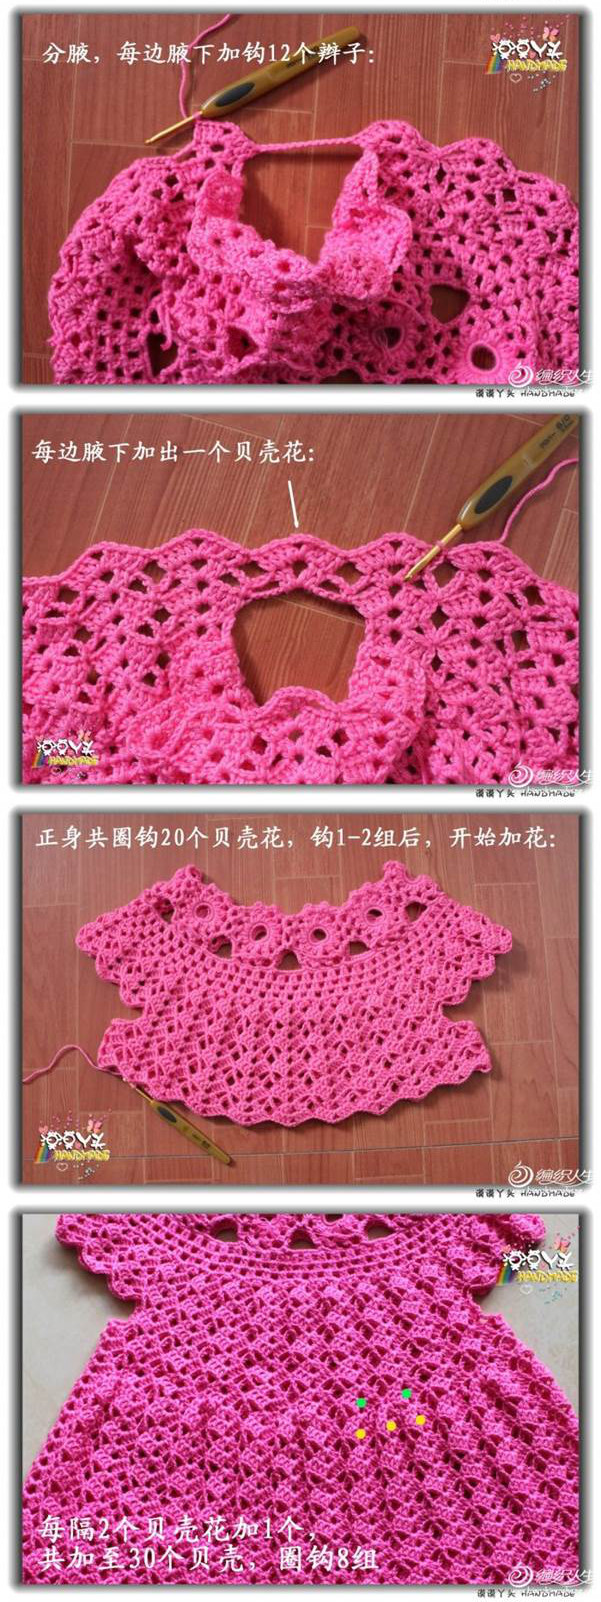 DIY-Beautiful-Crochet-Dress-00-04